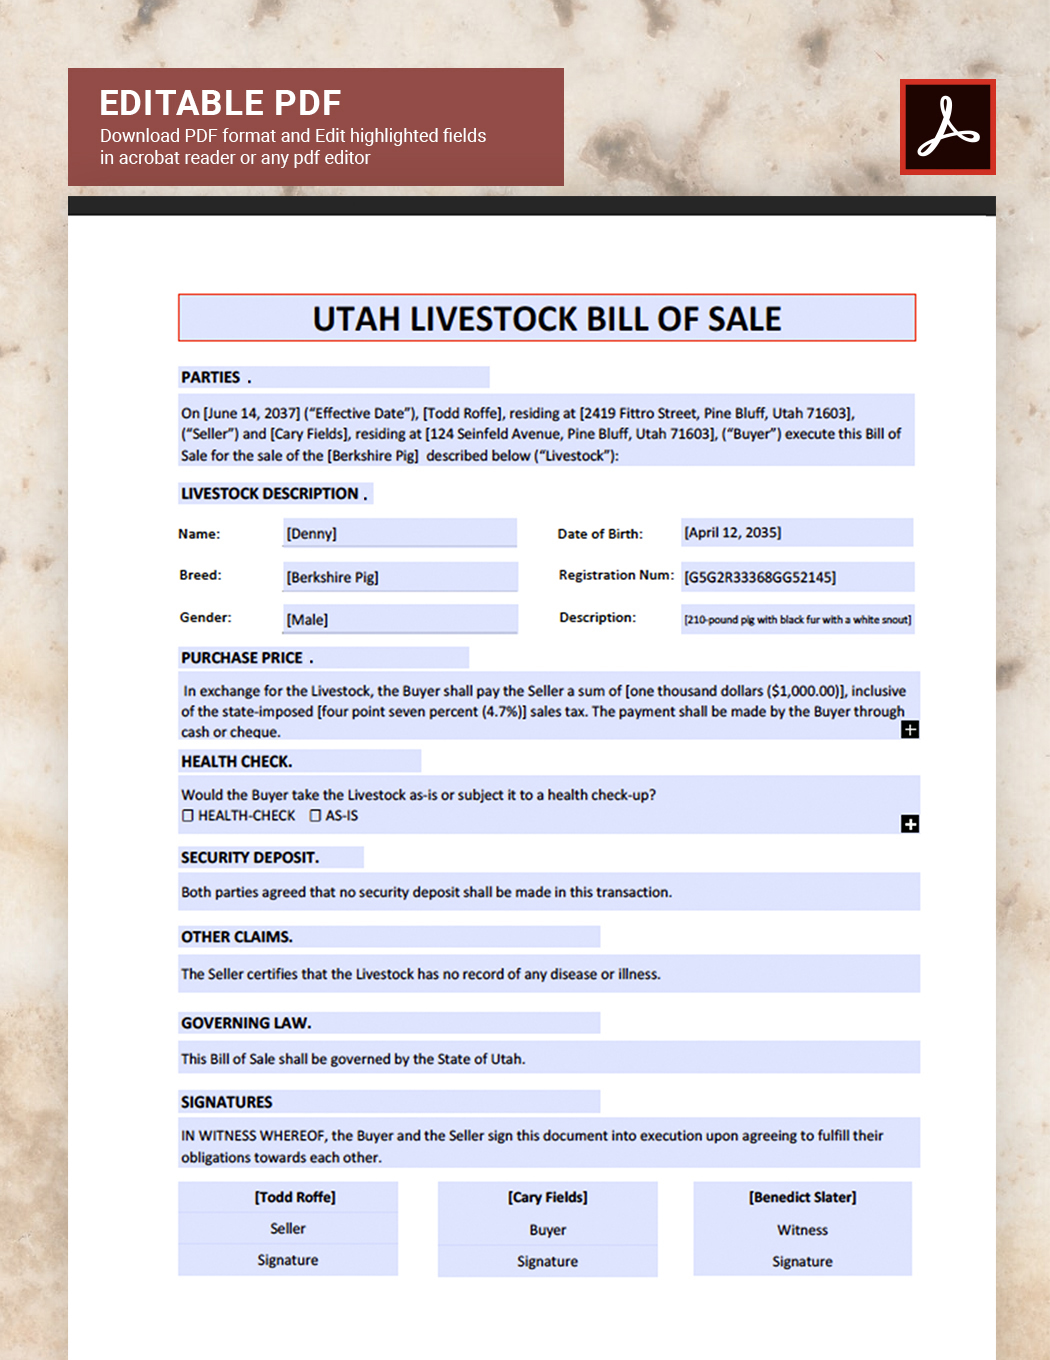 Utah Livestock Bill of Sale Template